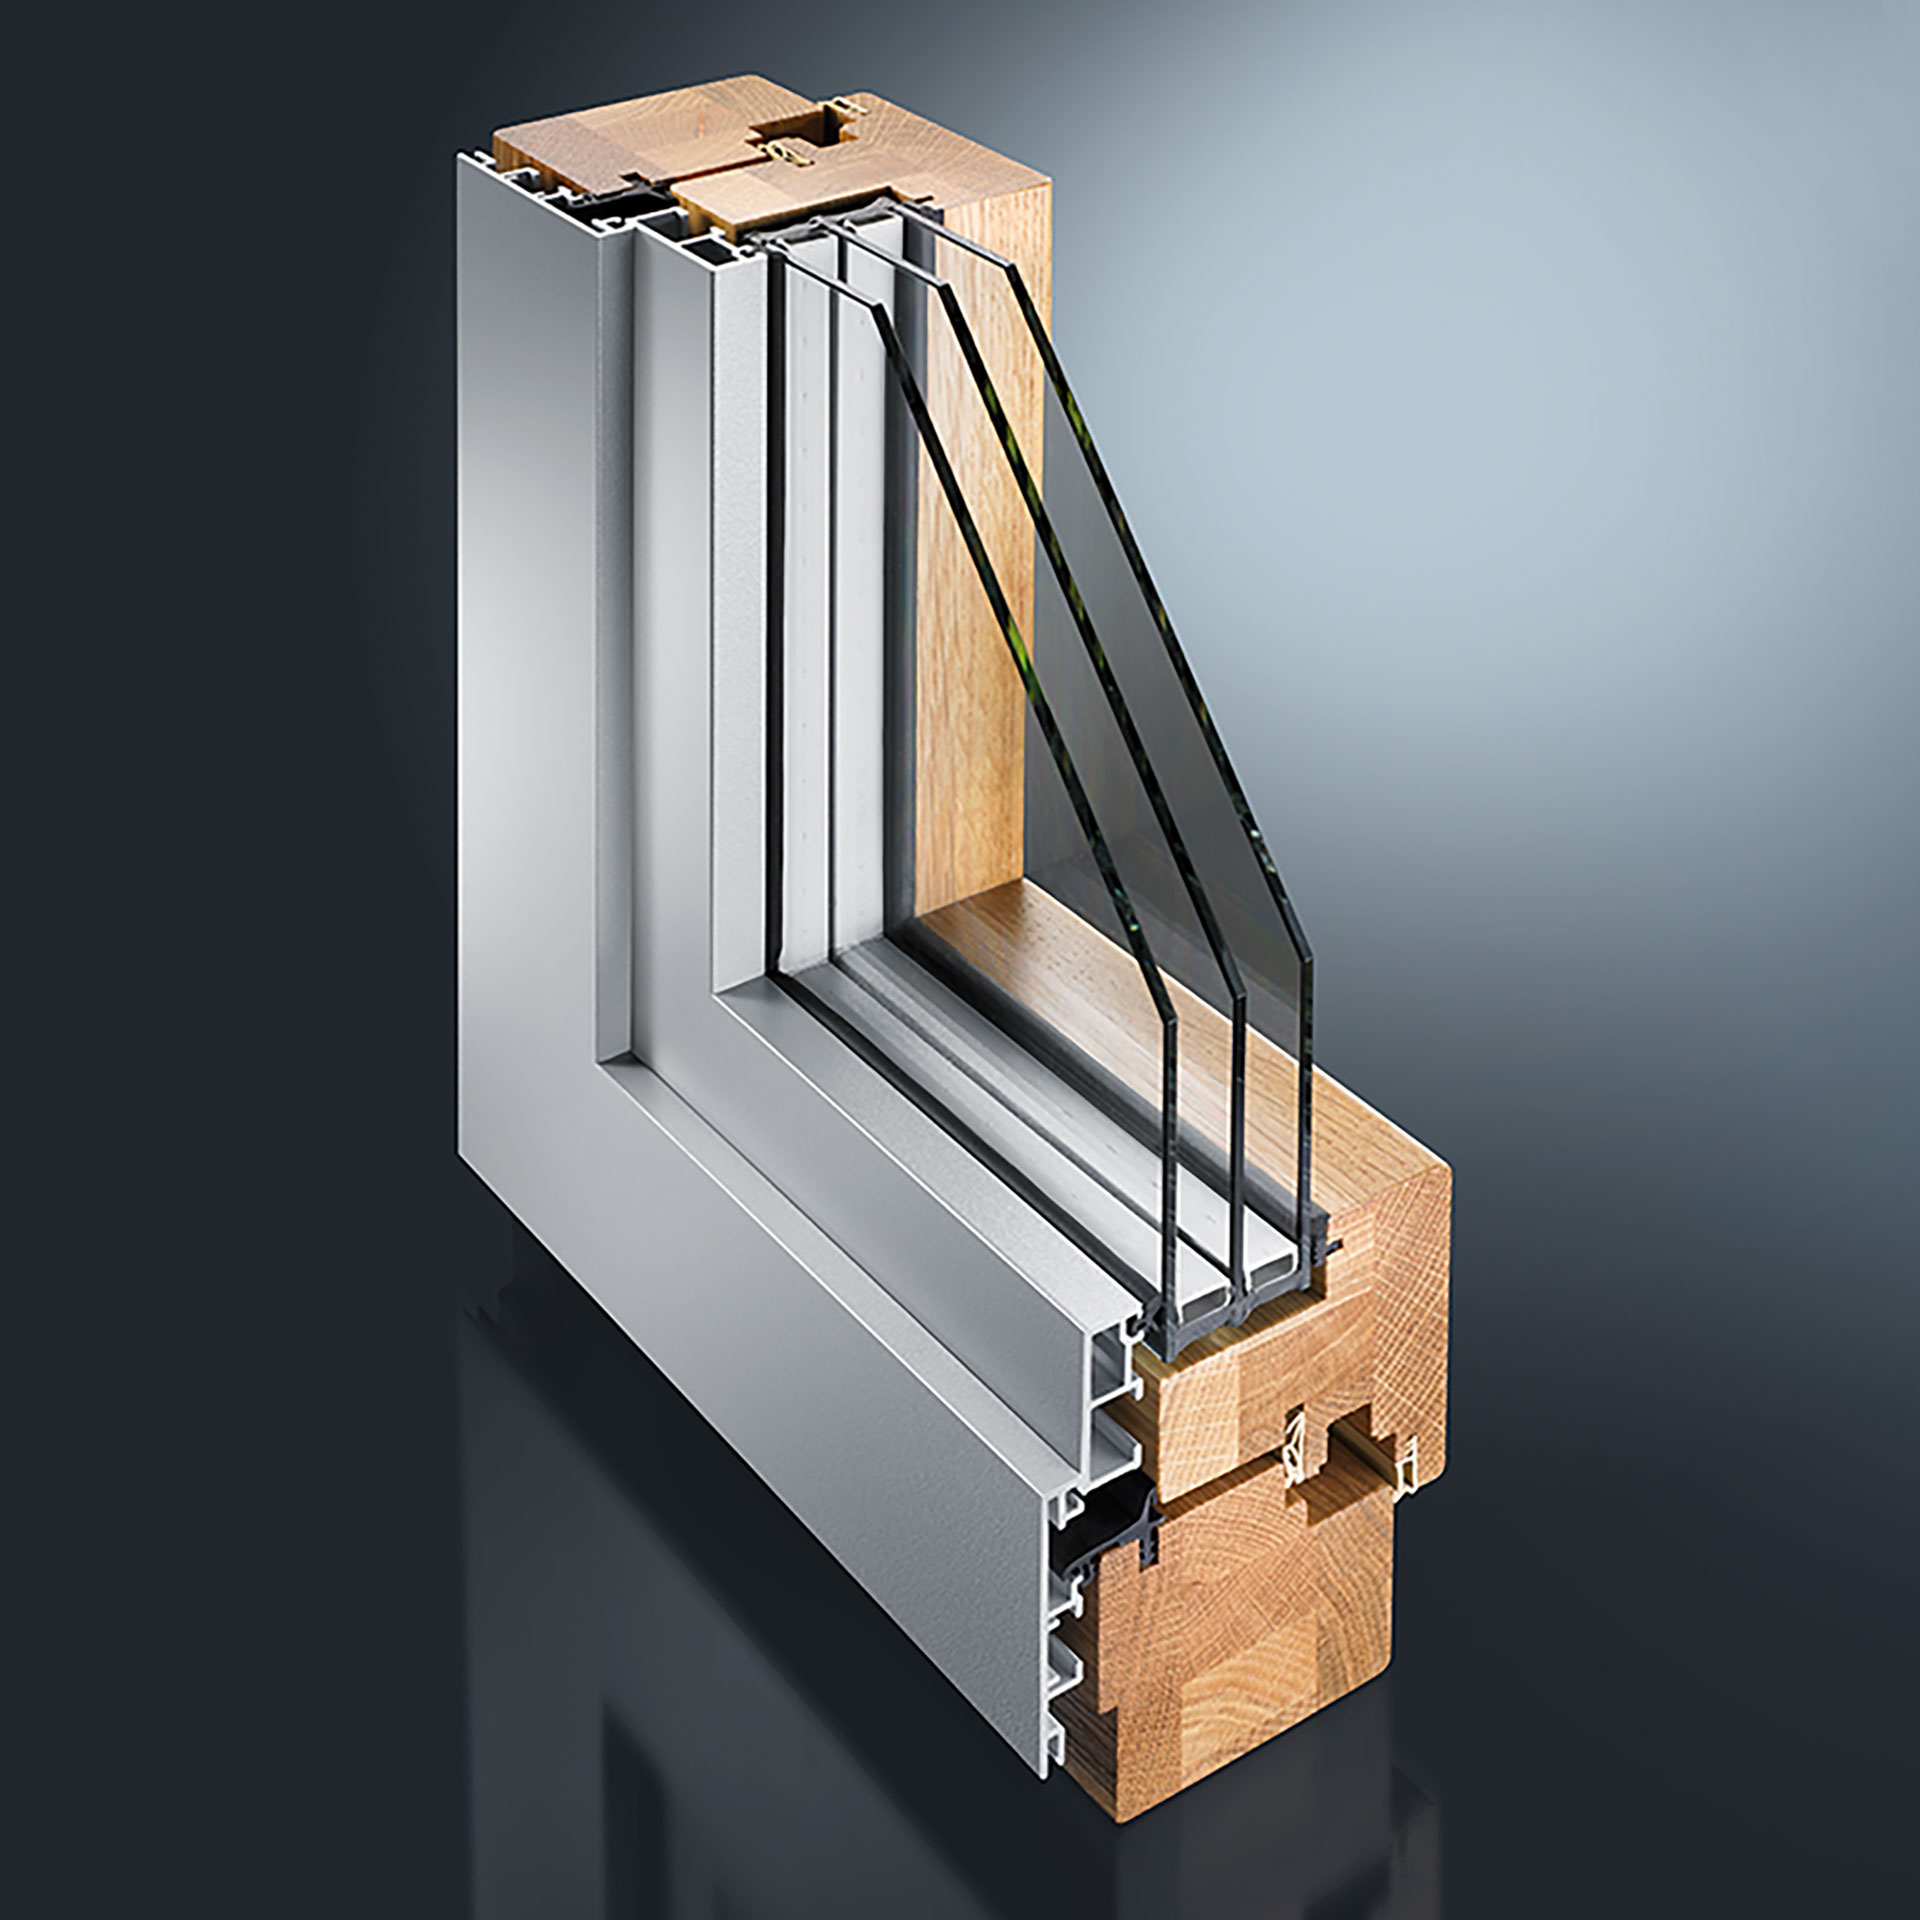 Rozwiązania drewniano-aluminiowe oferują rzemieślnikom i stolarzom możliwość połączenia mocnych stron aluminium z zaletami drewna. Systemy drewniano-aluminiowe GUTMANN mogą być realizowane przy niewielkim wysiłku konstrukcyjnym i montażowym.